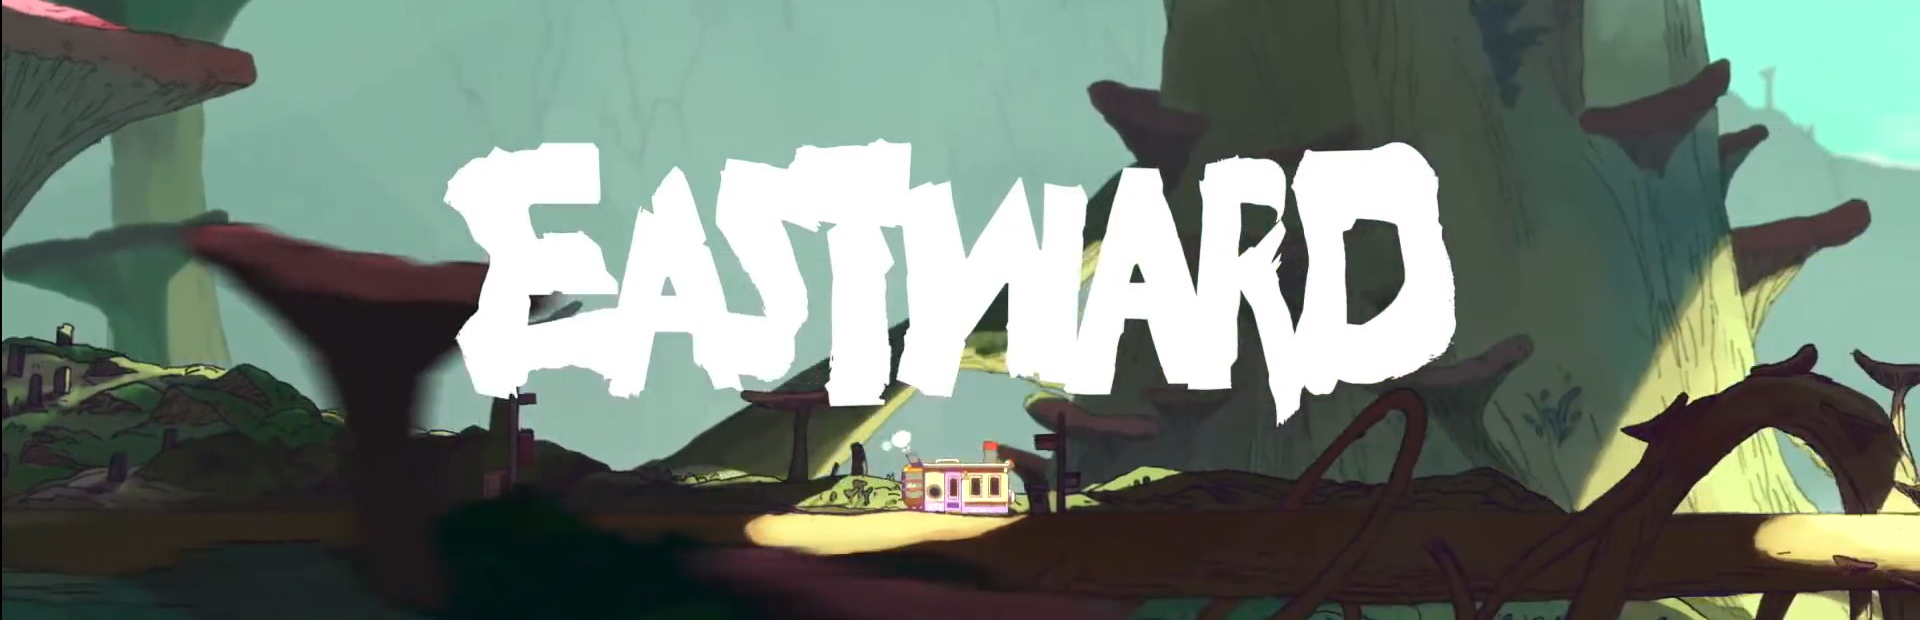 دانلود بازی Eastward برای PC | گیمباتو